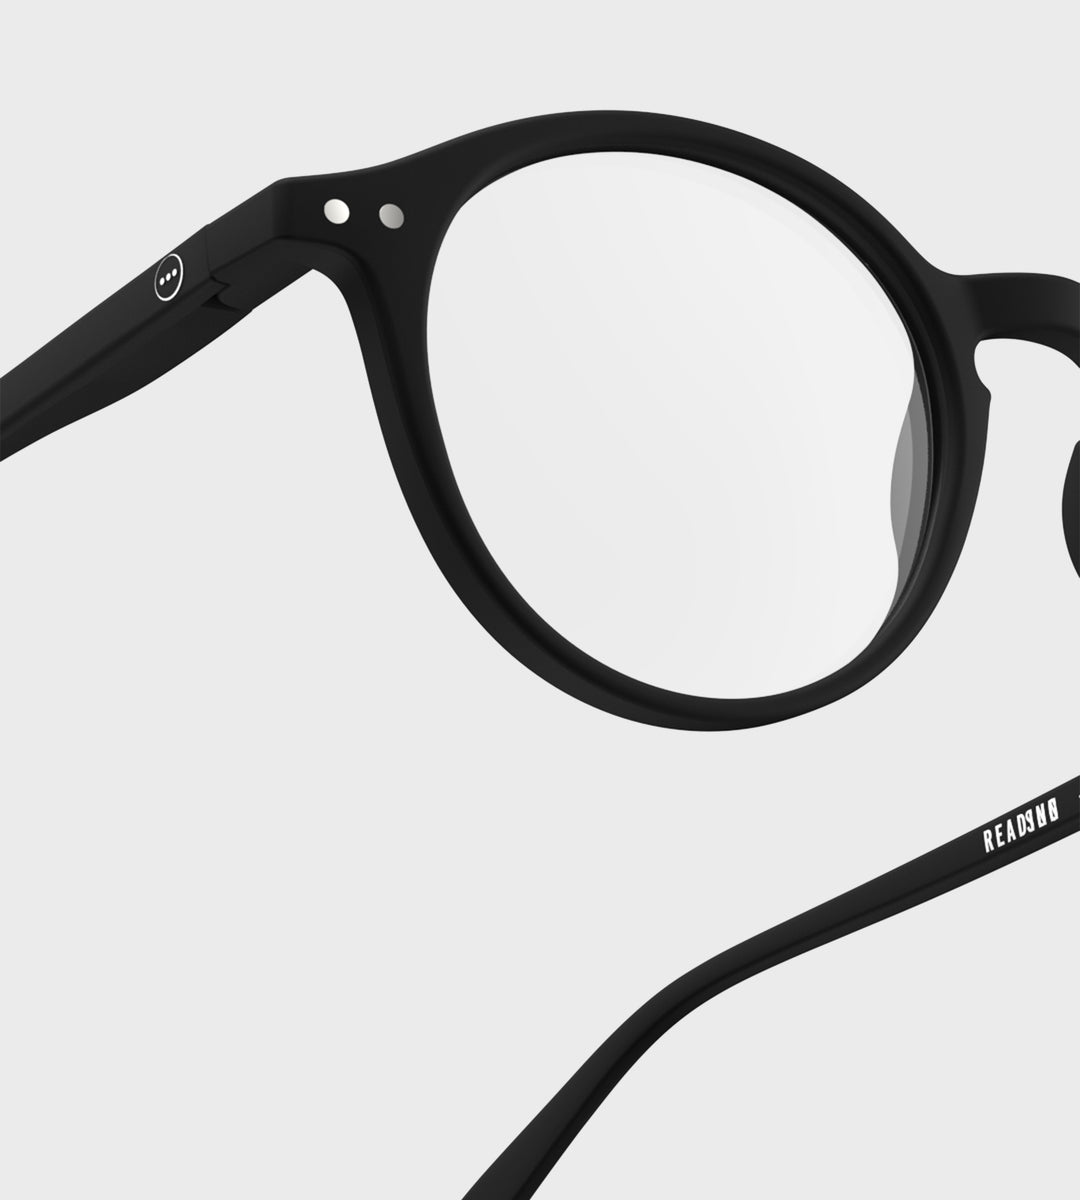 Izipizi | Reading Glasses #D | Black